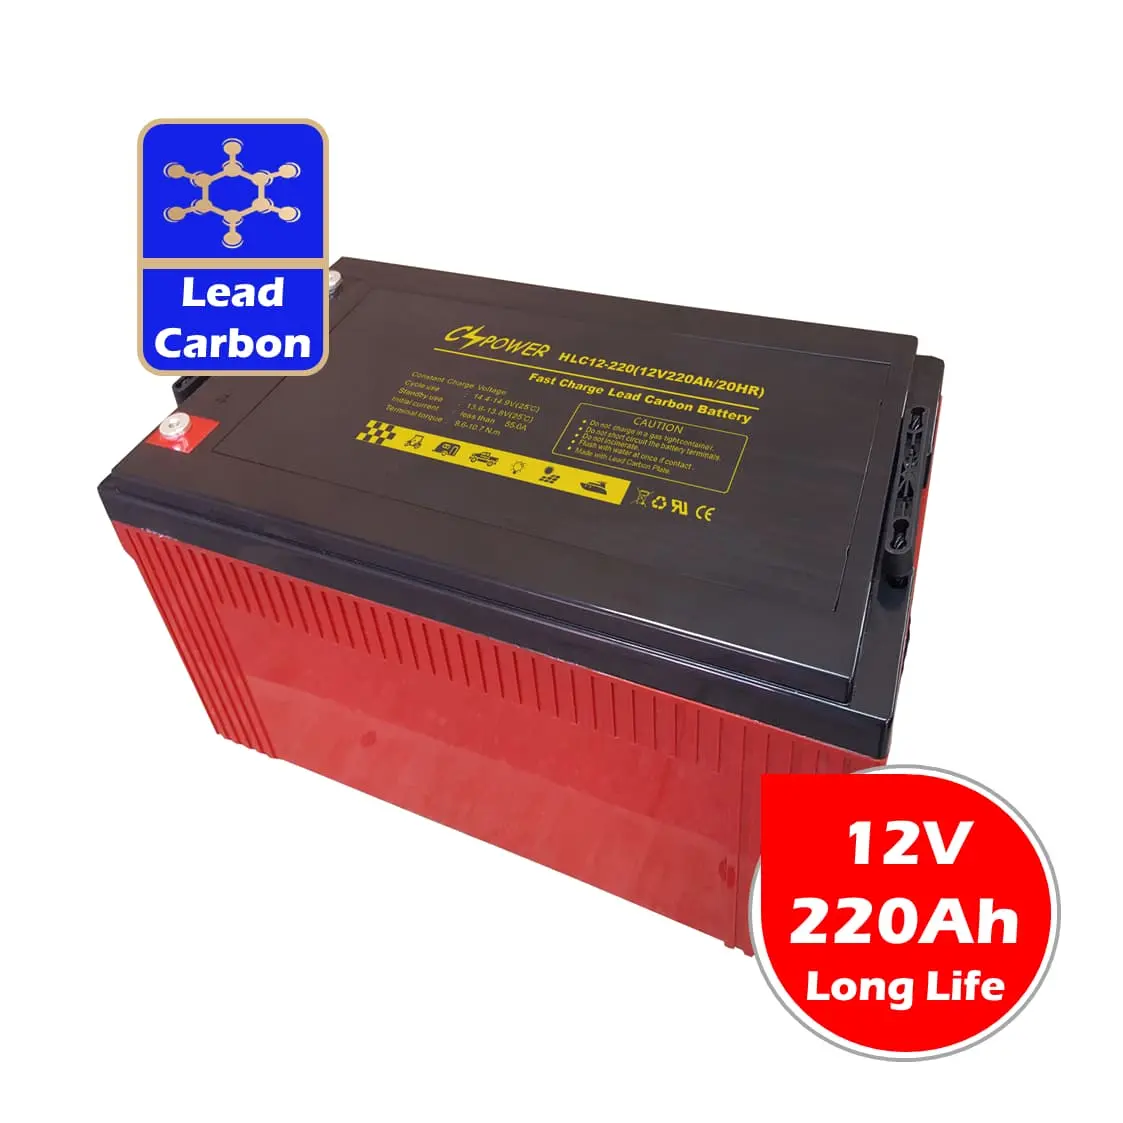 Cspower 12V 220Ah Onderhoudsvrije Loodkoolstofbatterij Voor Blokeconomie Batterij China Levering Vs: Ritar HLC12-220 Dar